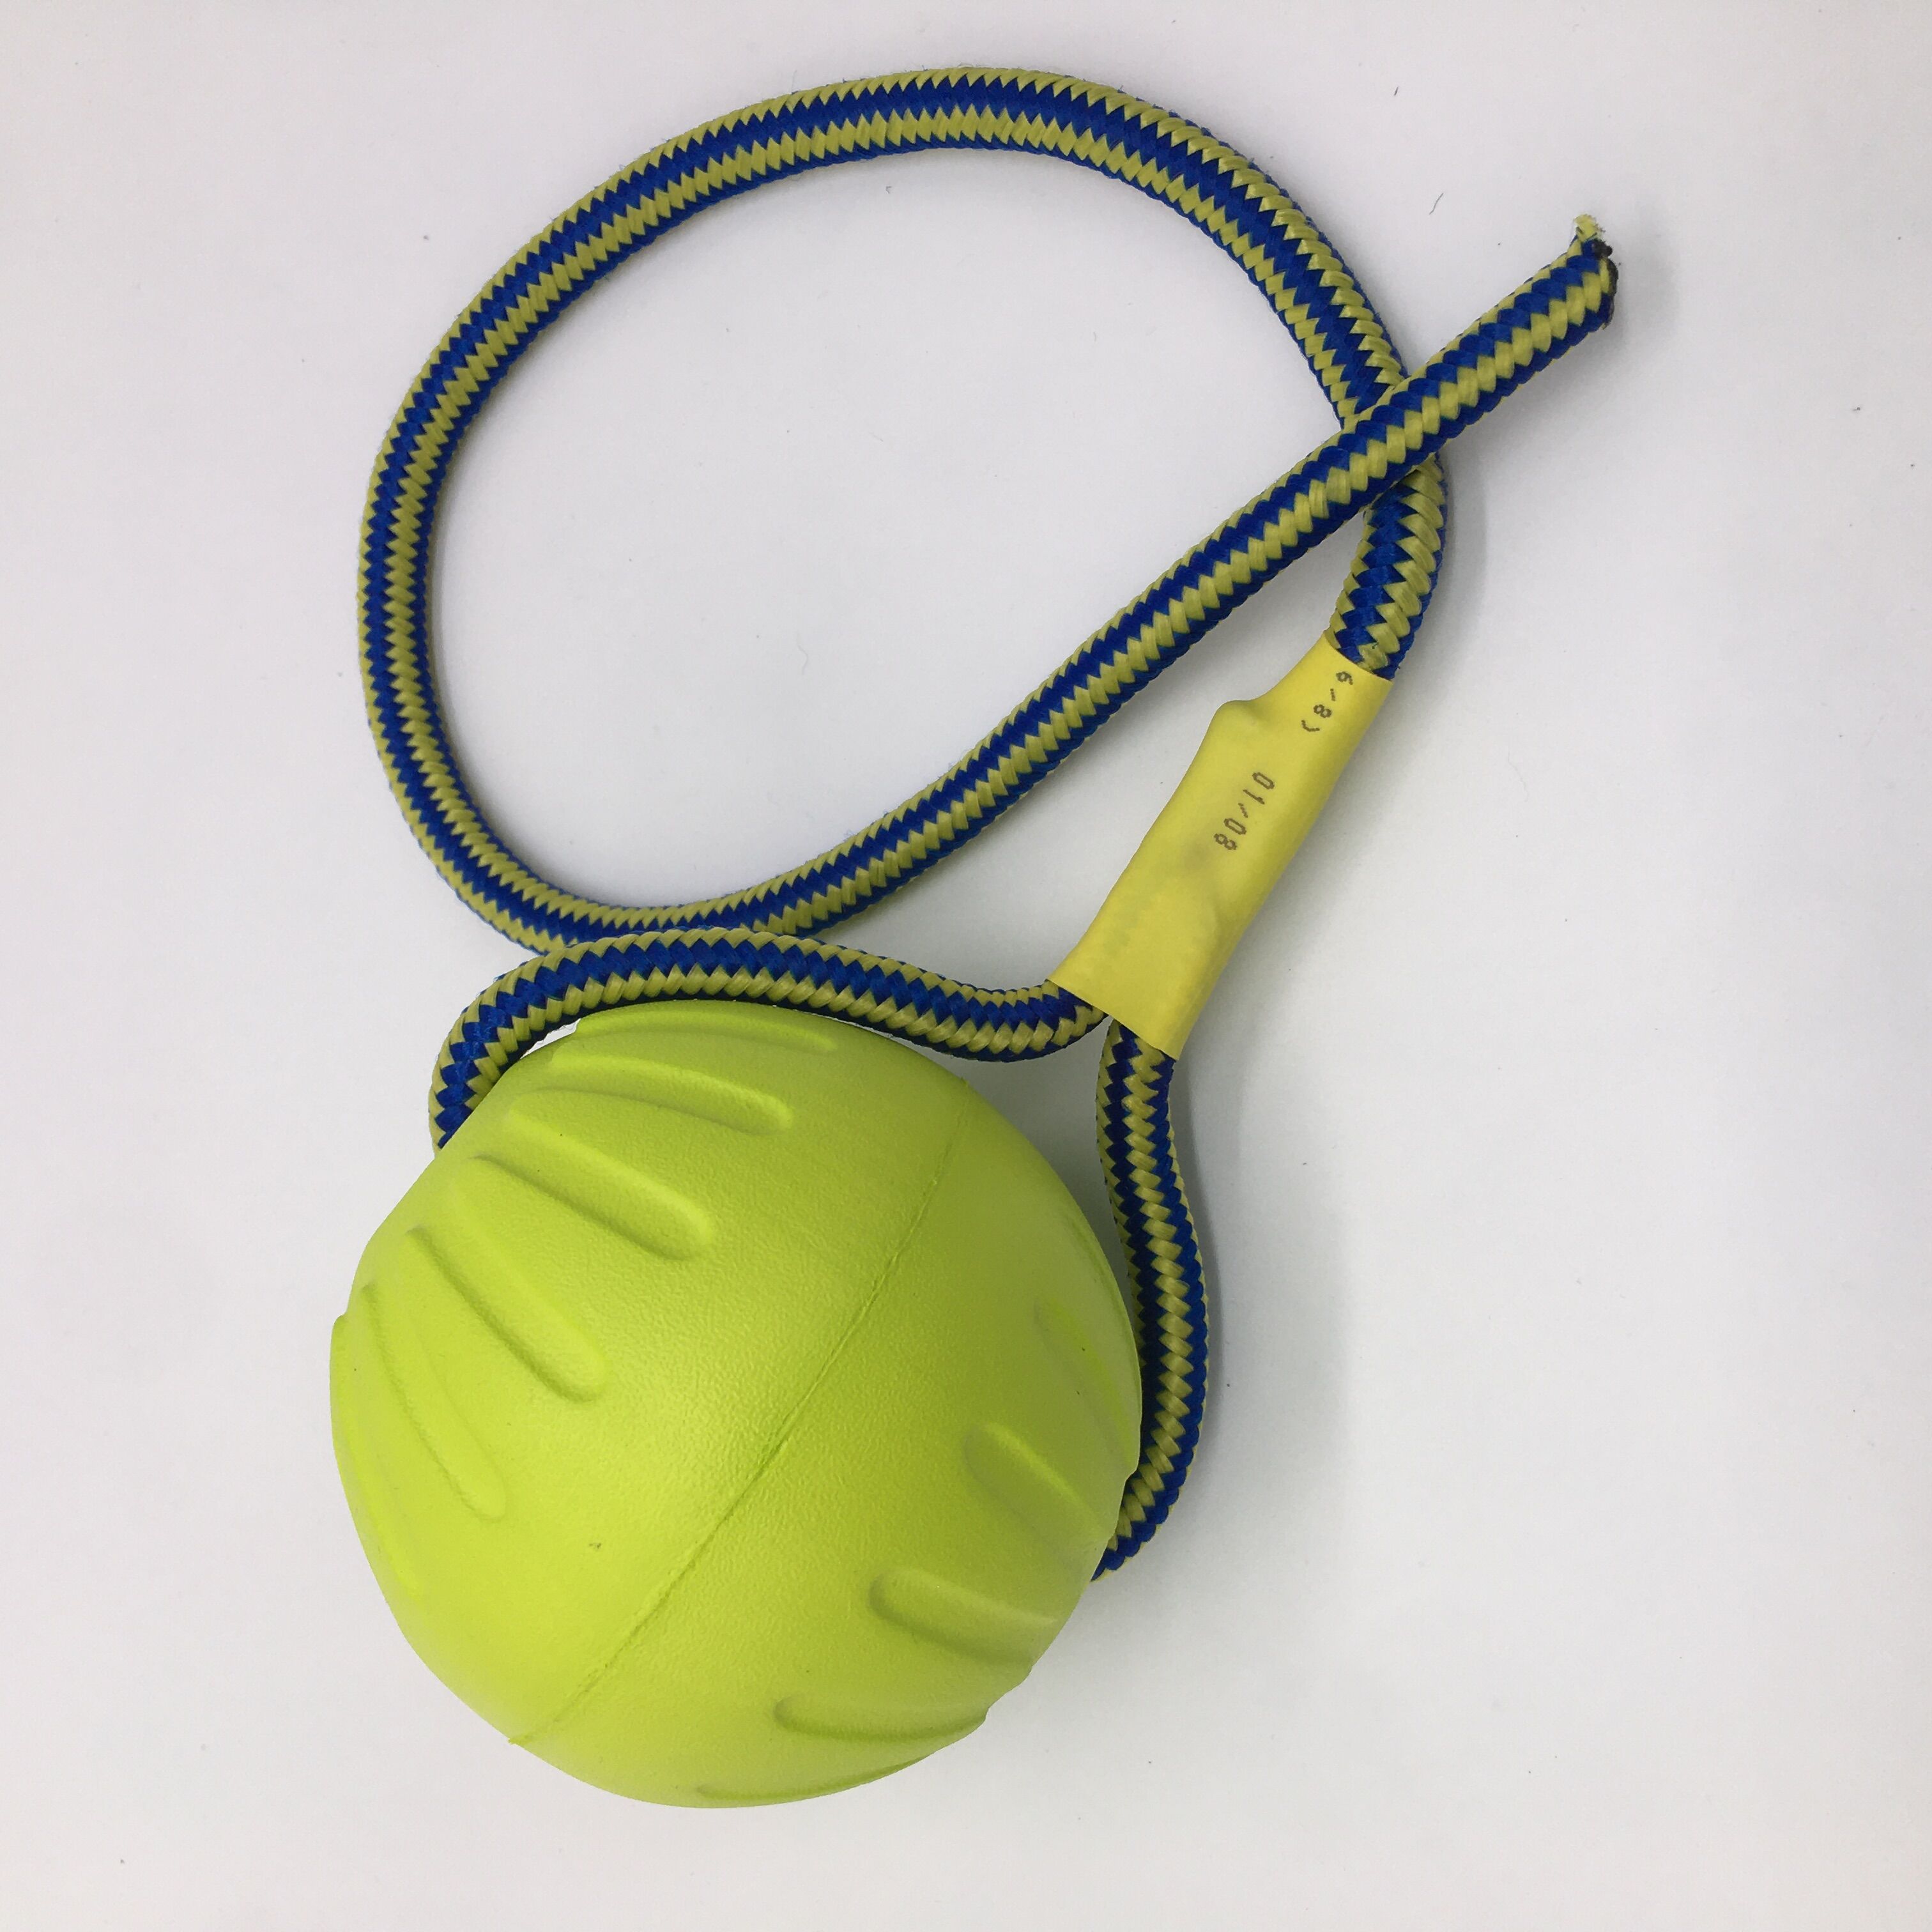 Jouet chien corde élastique tennis